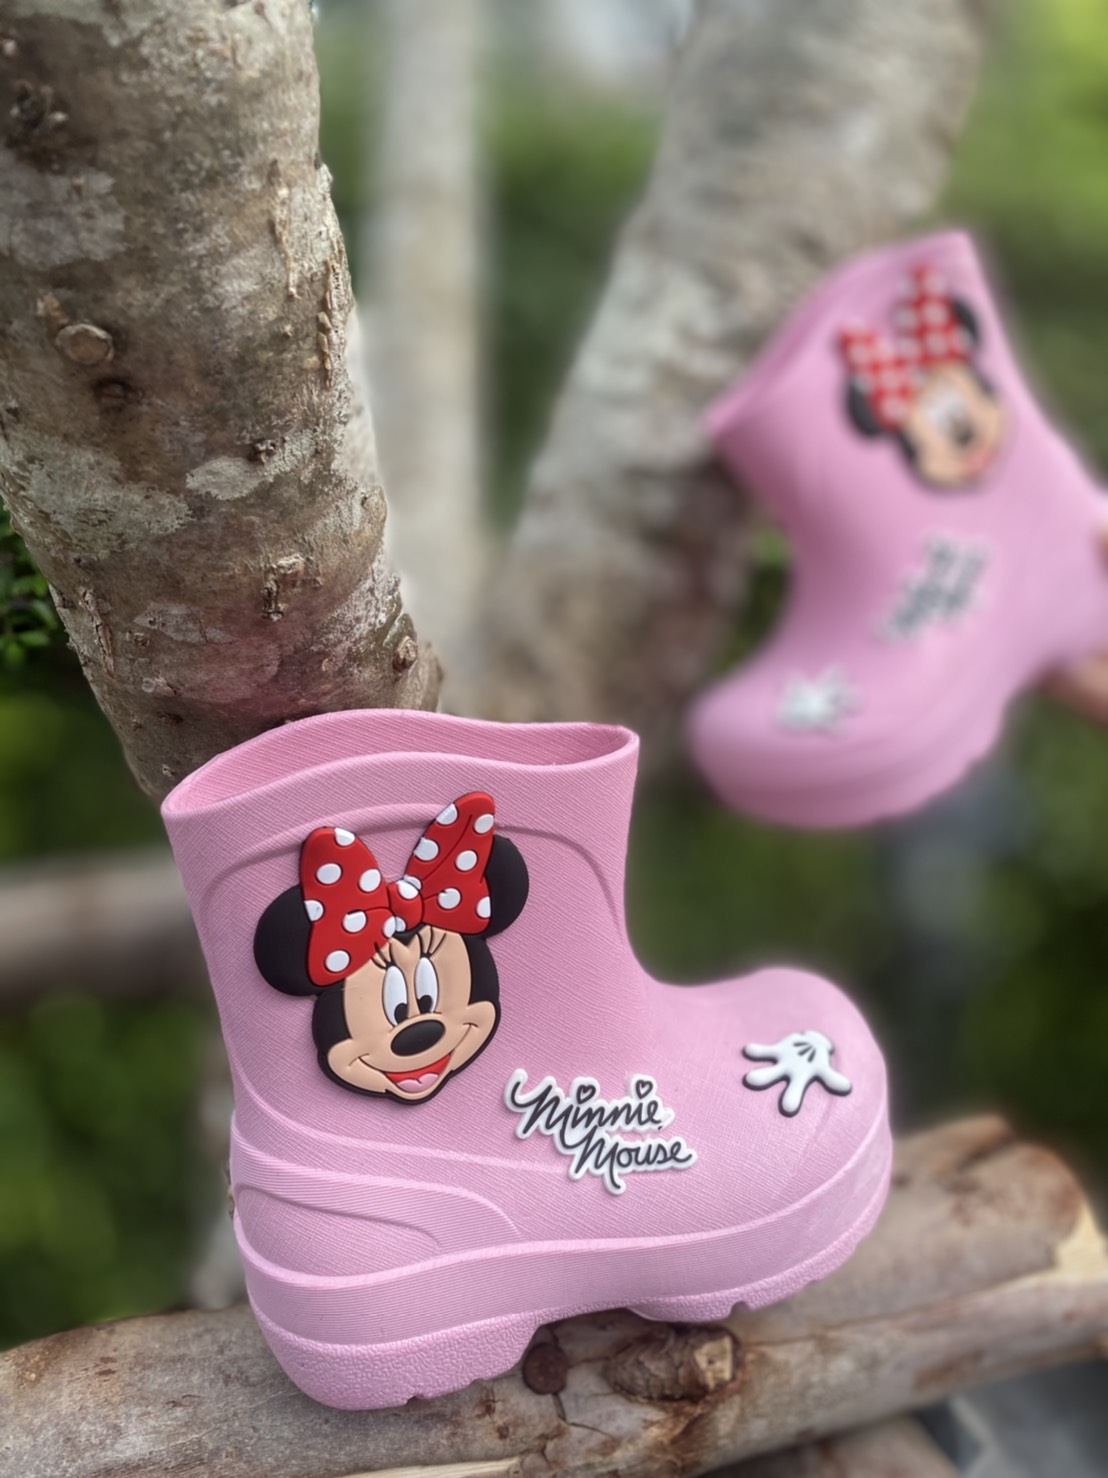 Toyswonderland รองเท้าเด็ก รองเท้าบูทเด็ก ลาย Minnie Mouse มินนี่ งานลิขสิทธิ์แท้ 100%